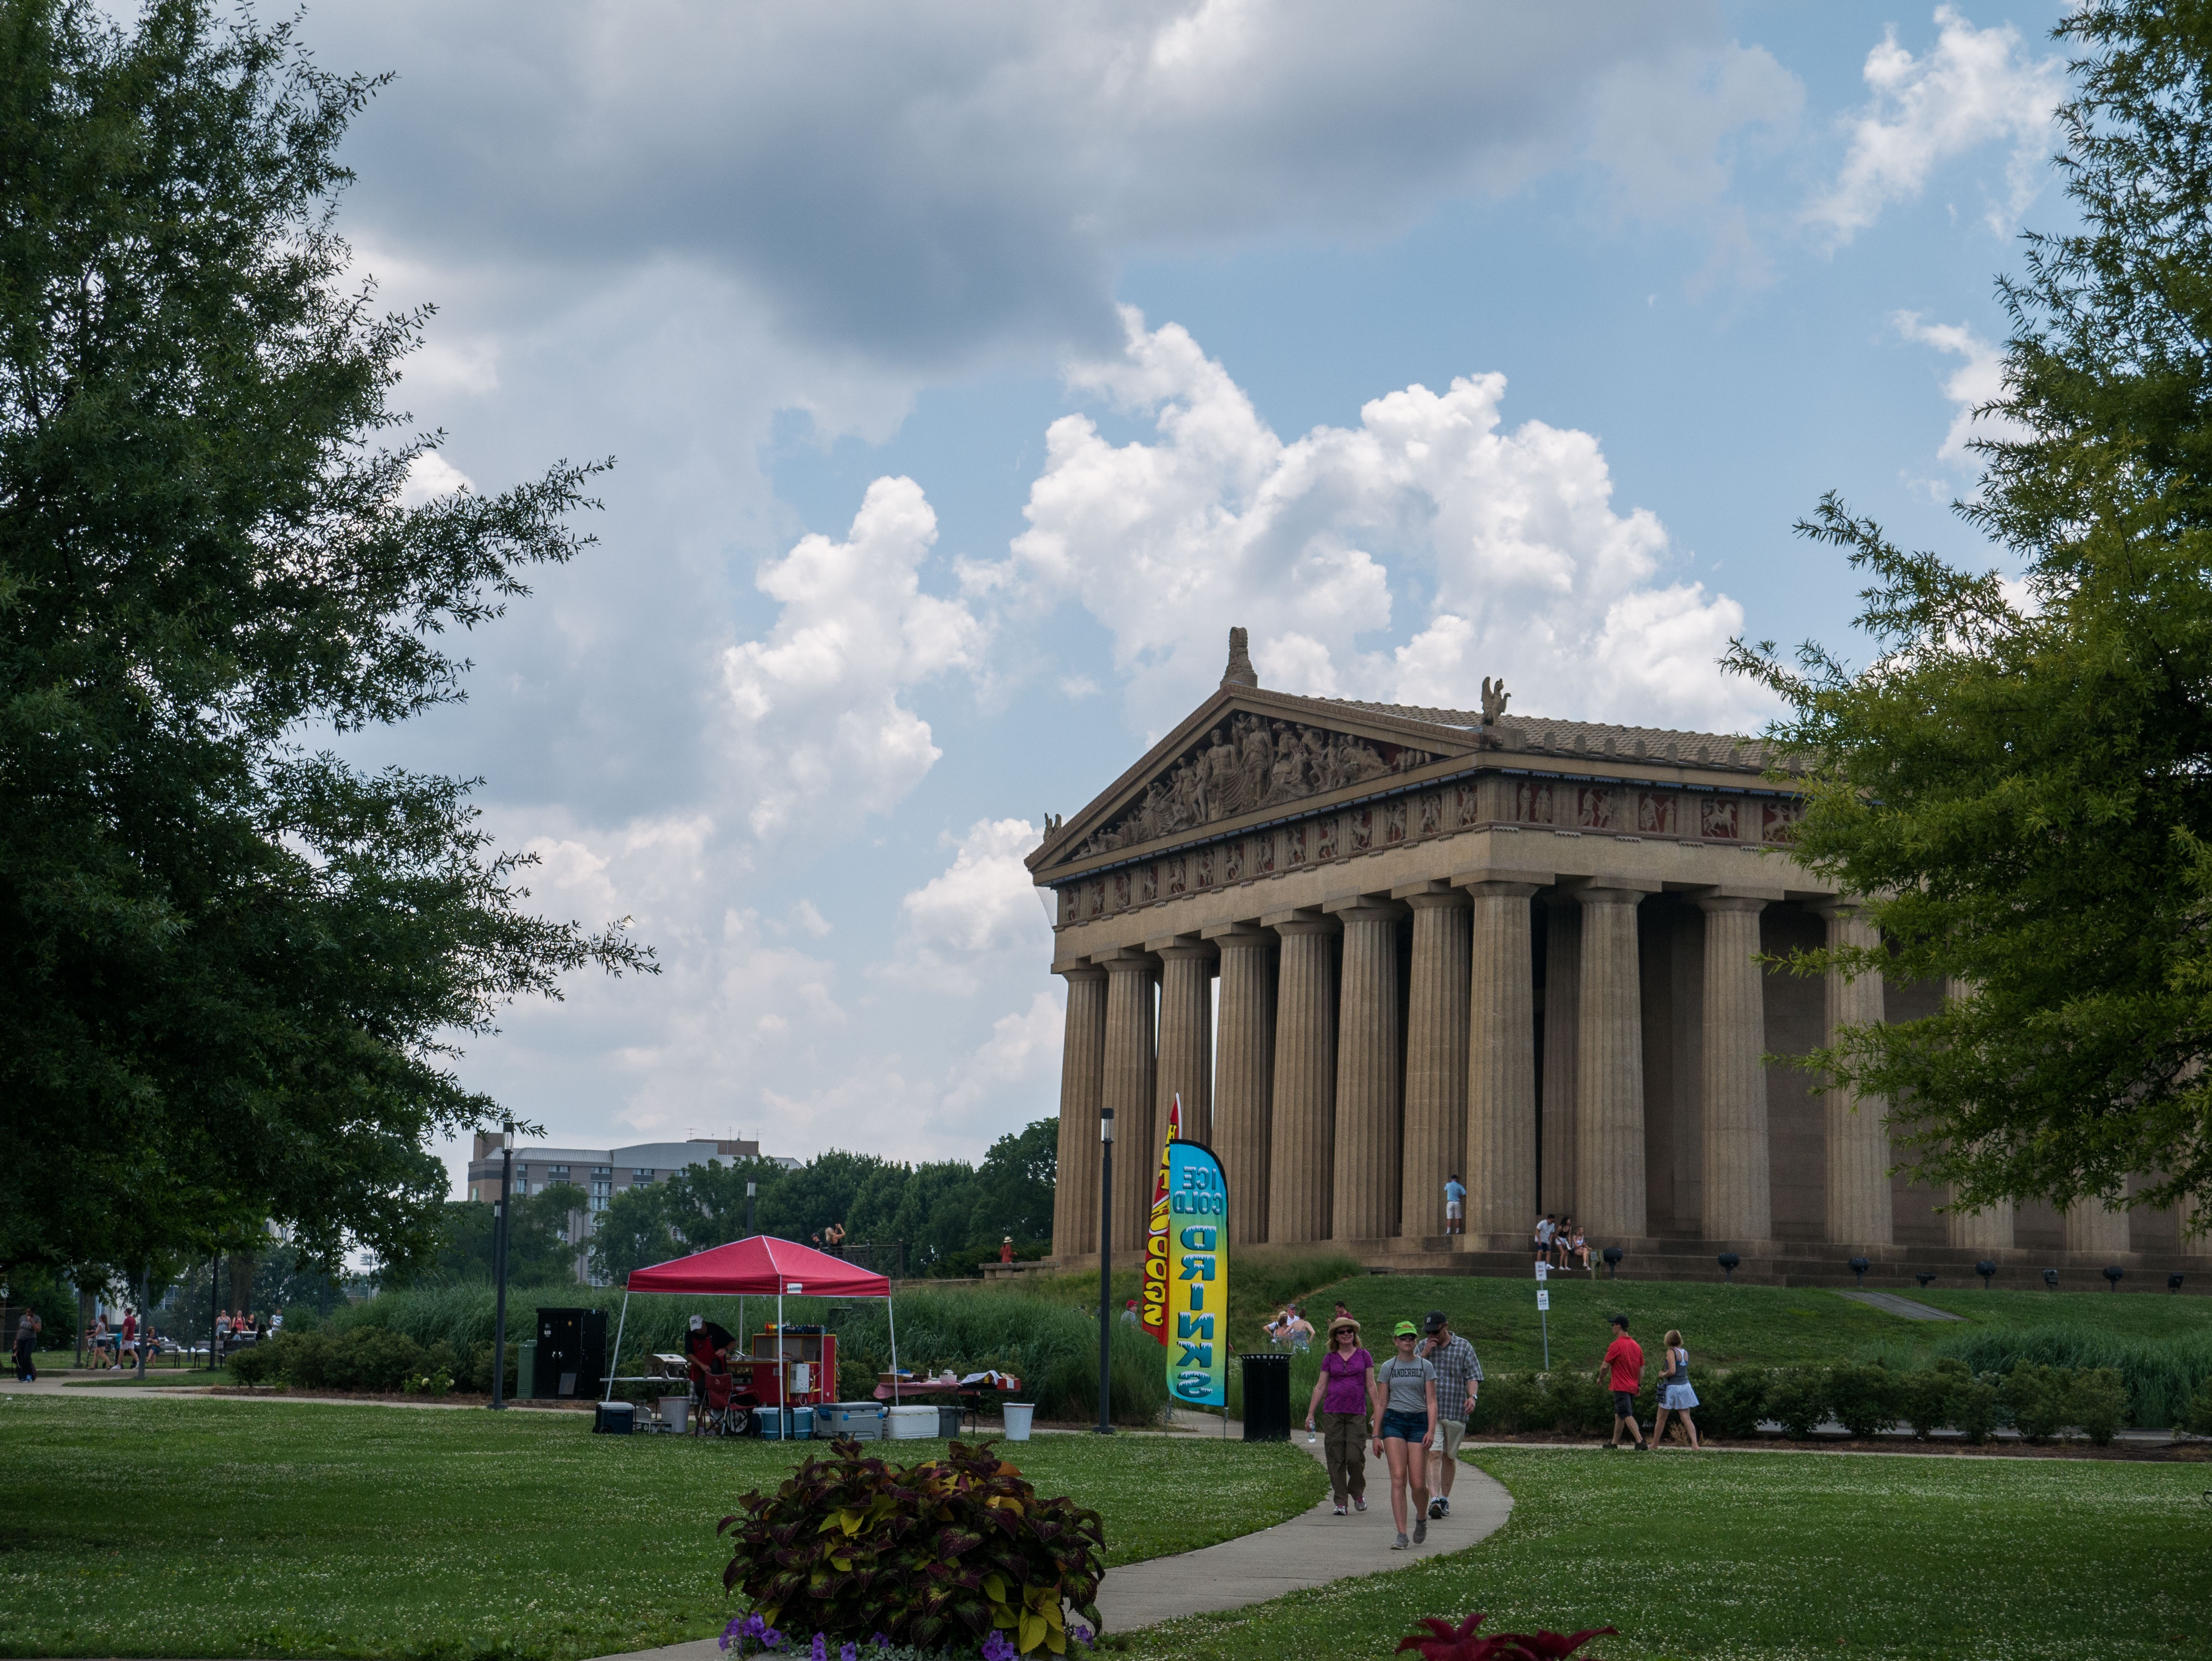 The Nashville Parthenon in Centennial Park